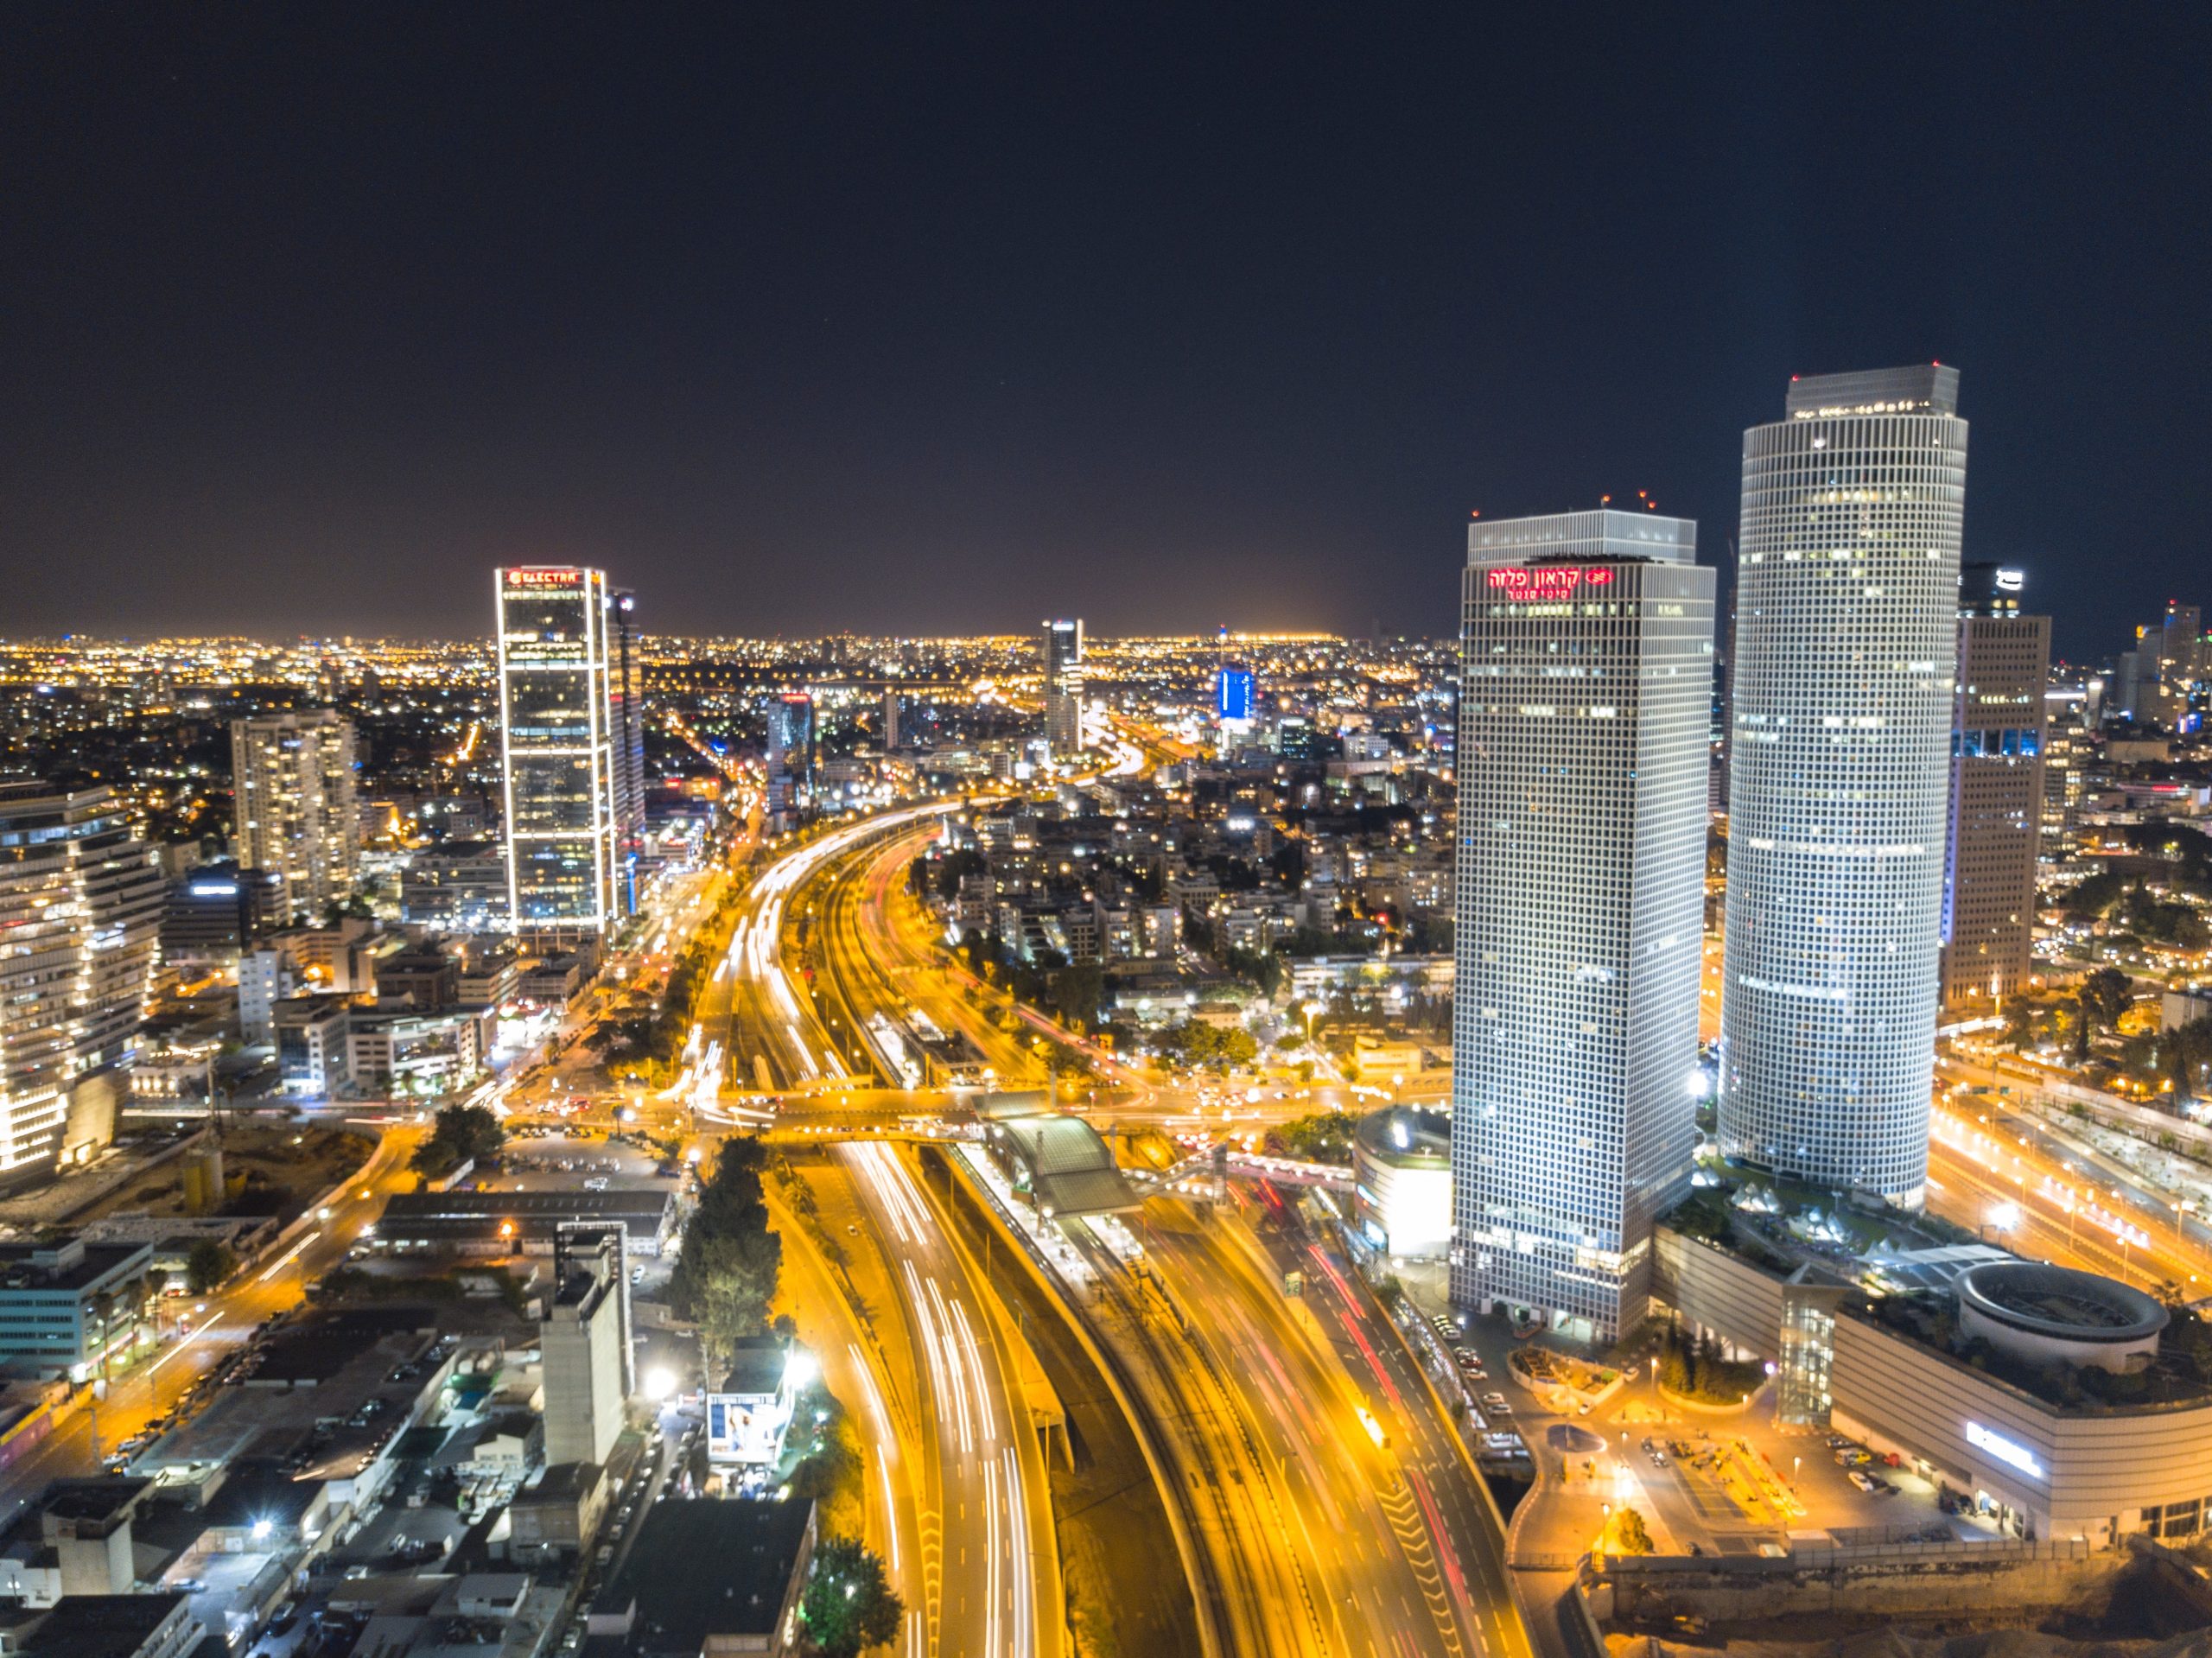 Tel Aviv at night